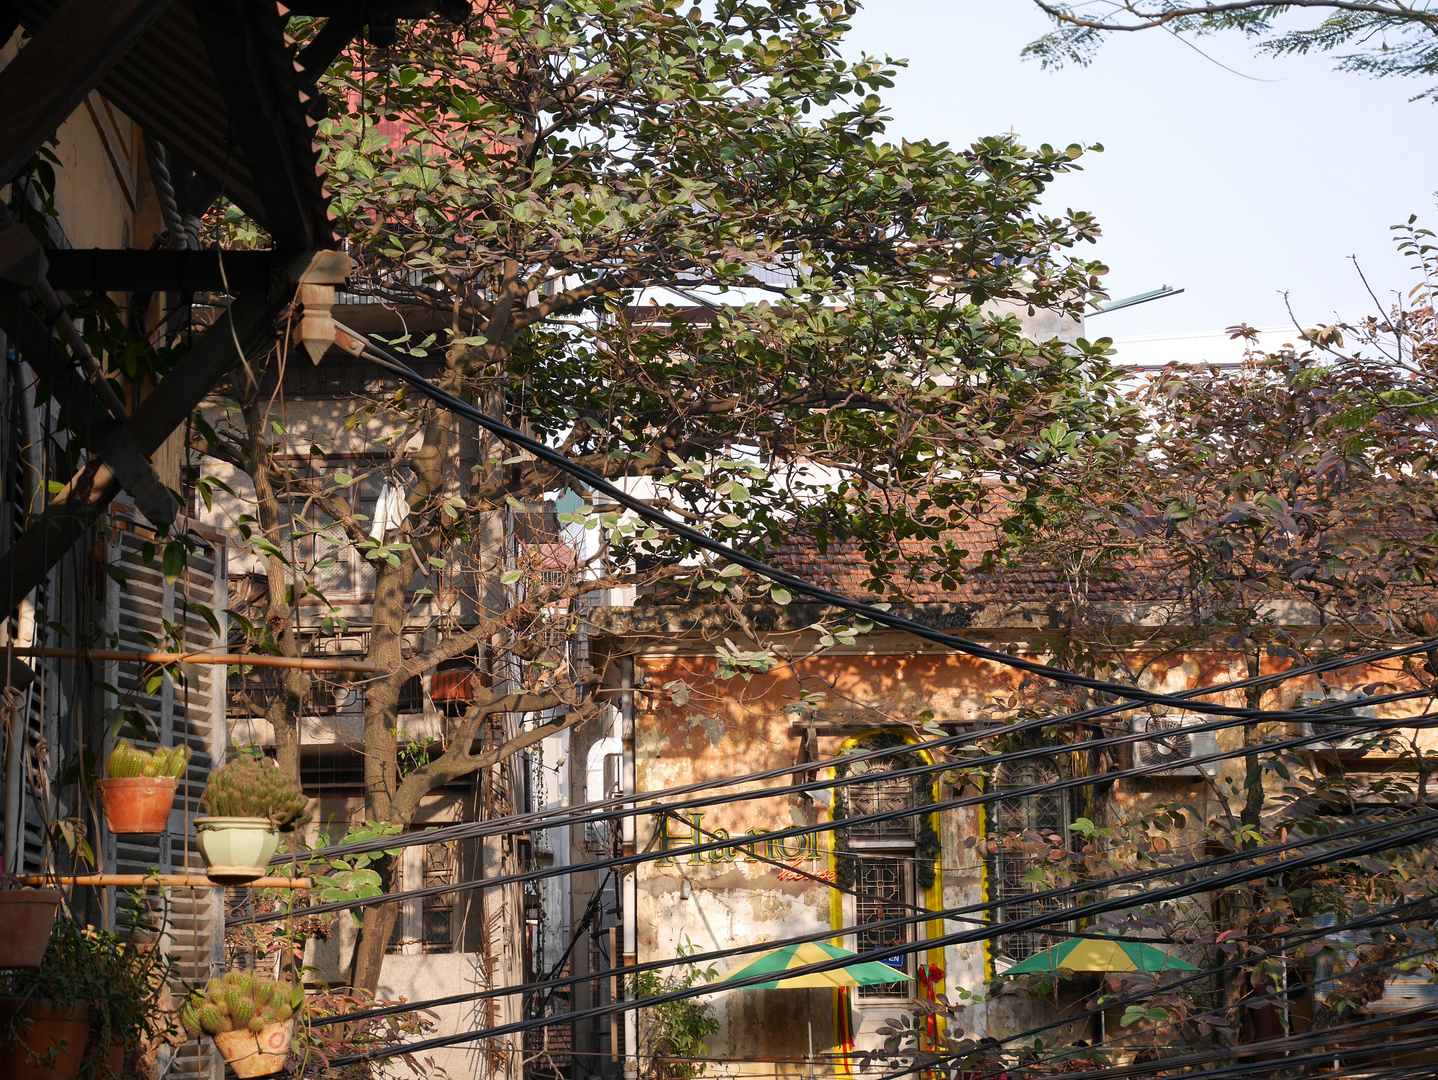 Häuserecke in Hanoi